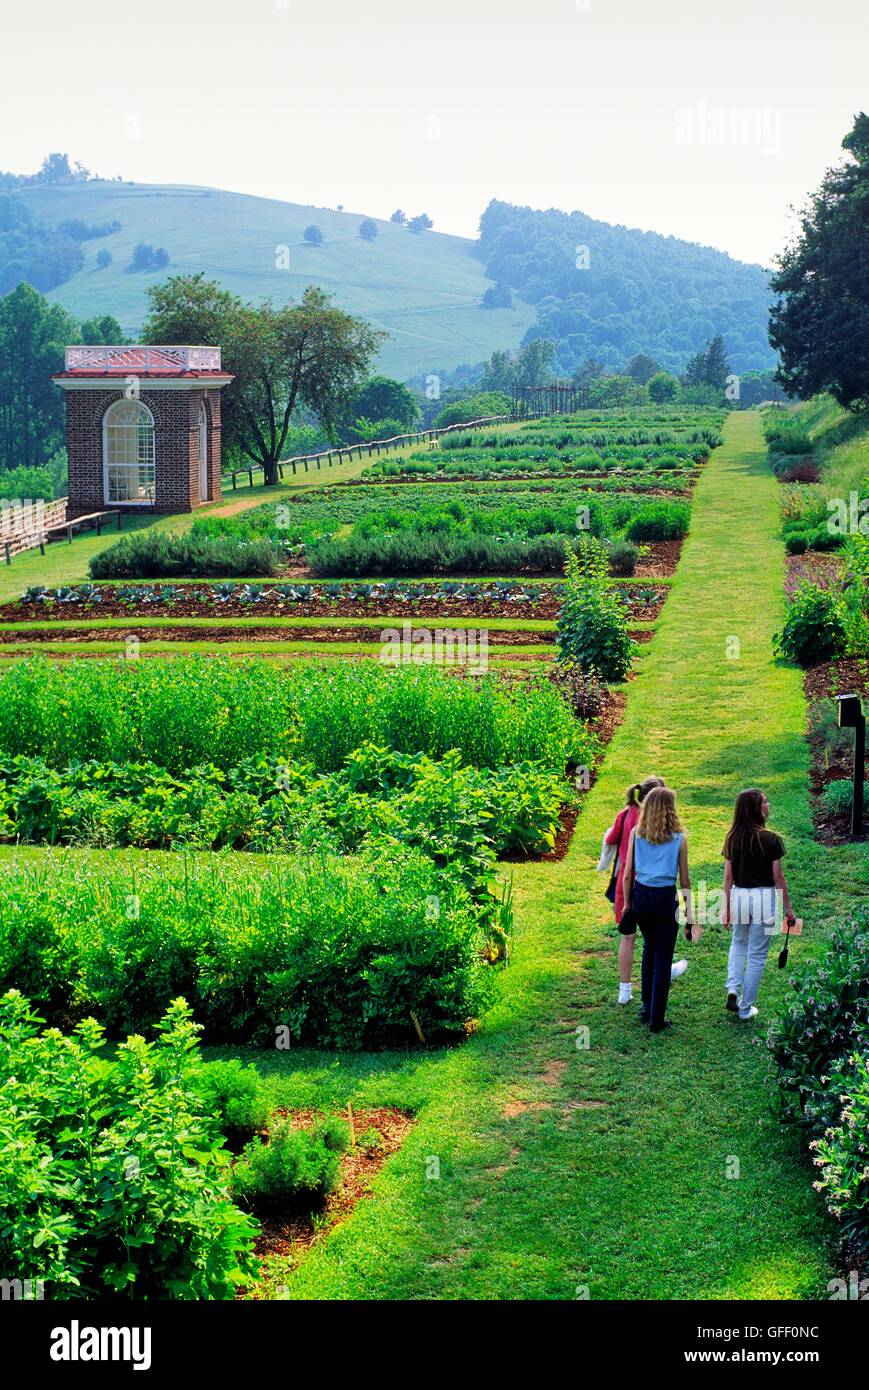 Monticello. Plantation House Haus von Thomas Jefferson, in der Nähe von Charlottesville, Virginia. Junge Frauen besucht Gemüsegarten Stockfoto